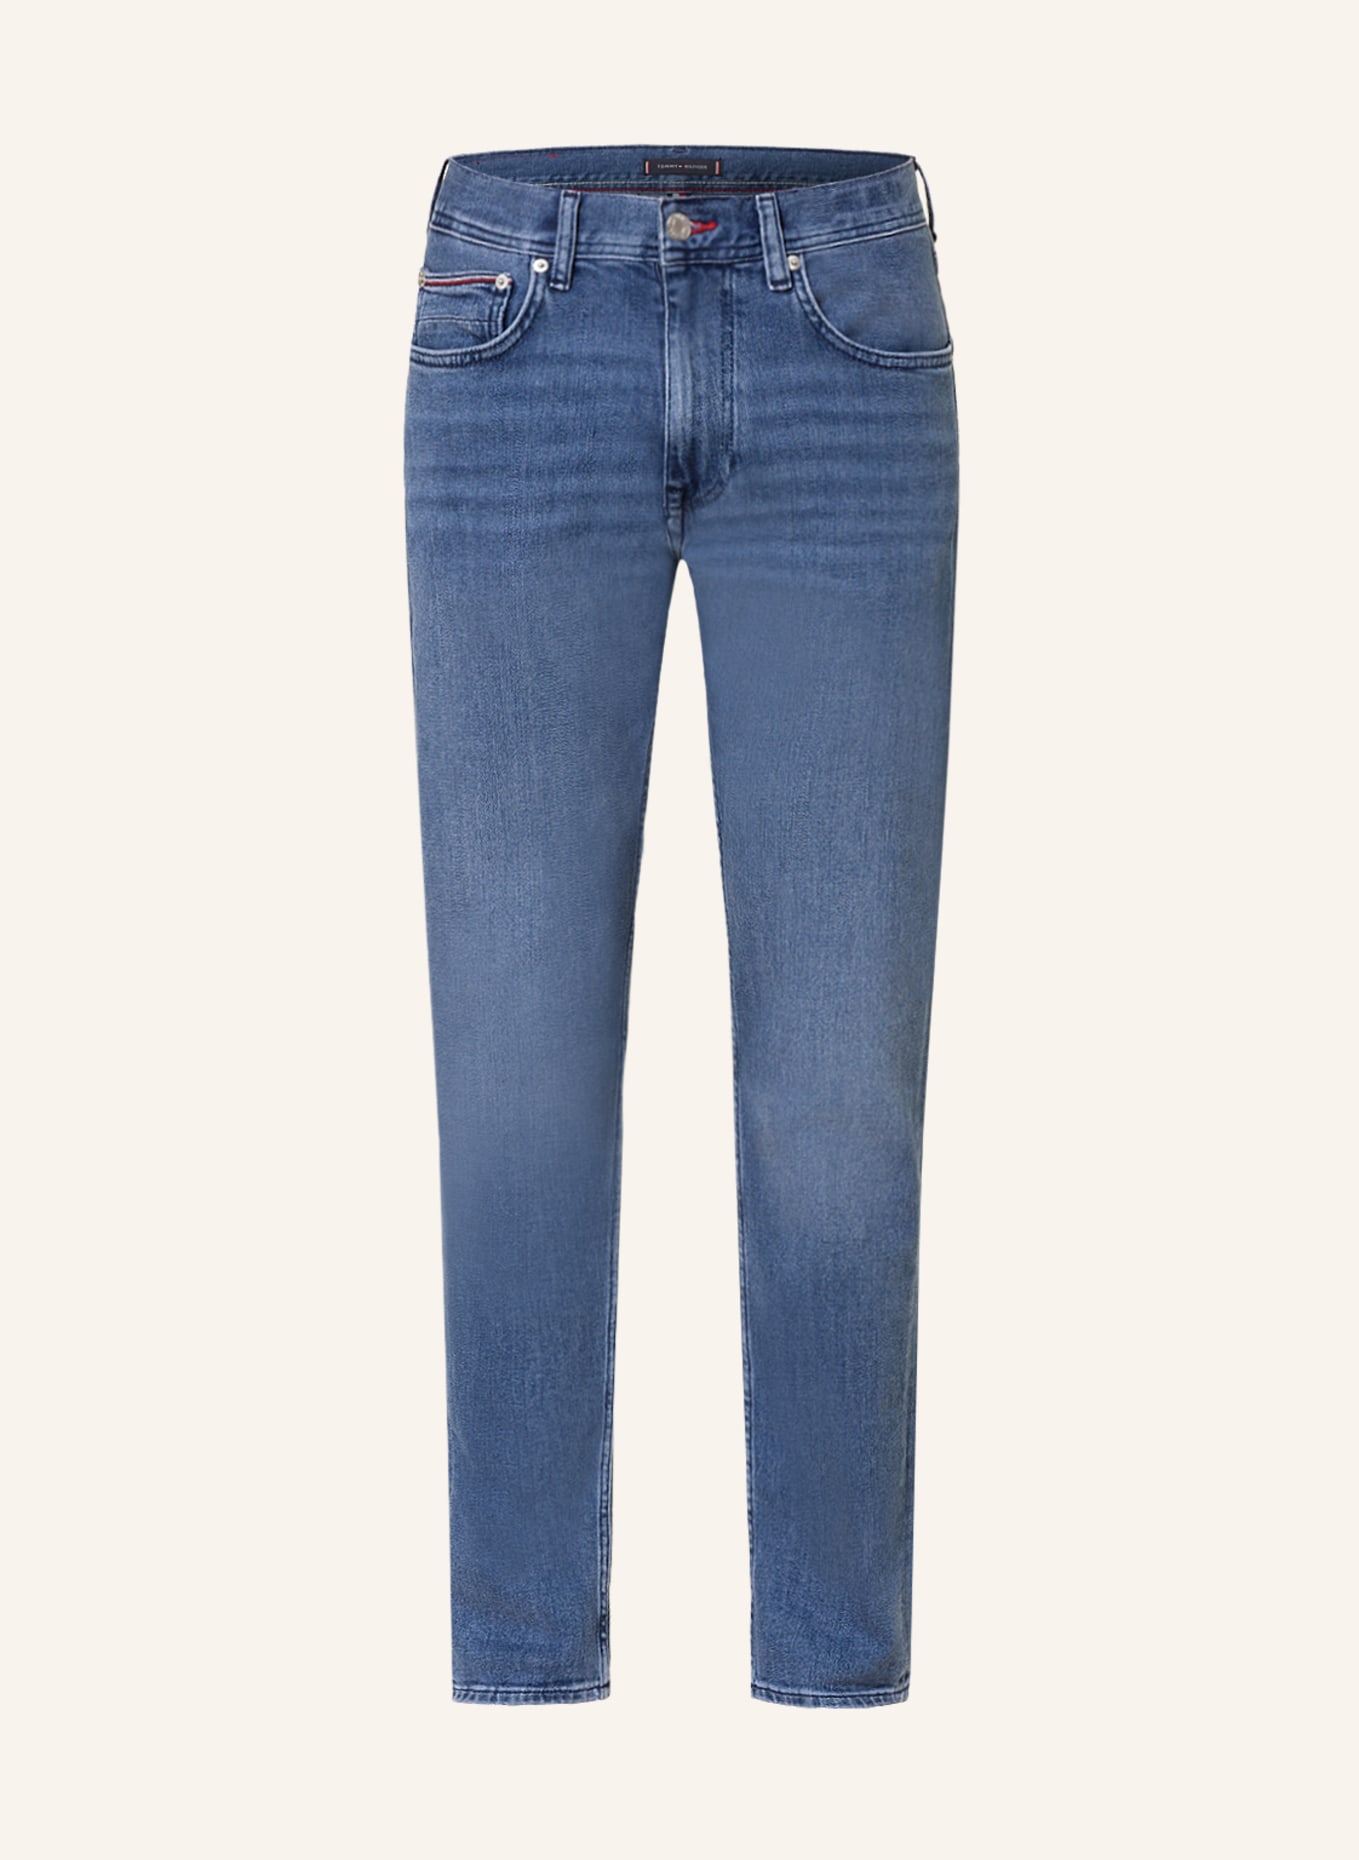 TOMMY HILFIGER Jeans HOUSTON Slim Taper Fit, Farbe: 1A8 Bass Blue (Bild 1)